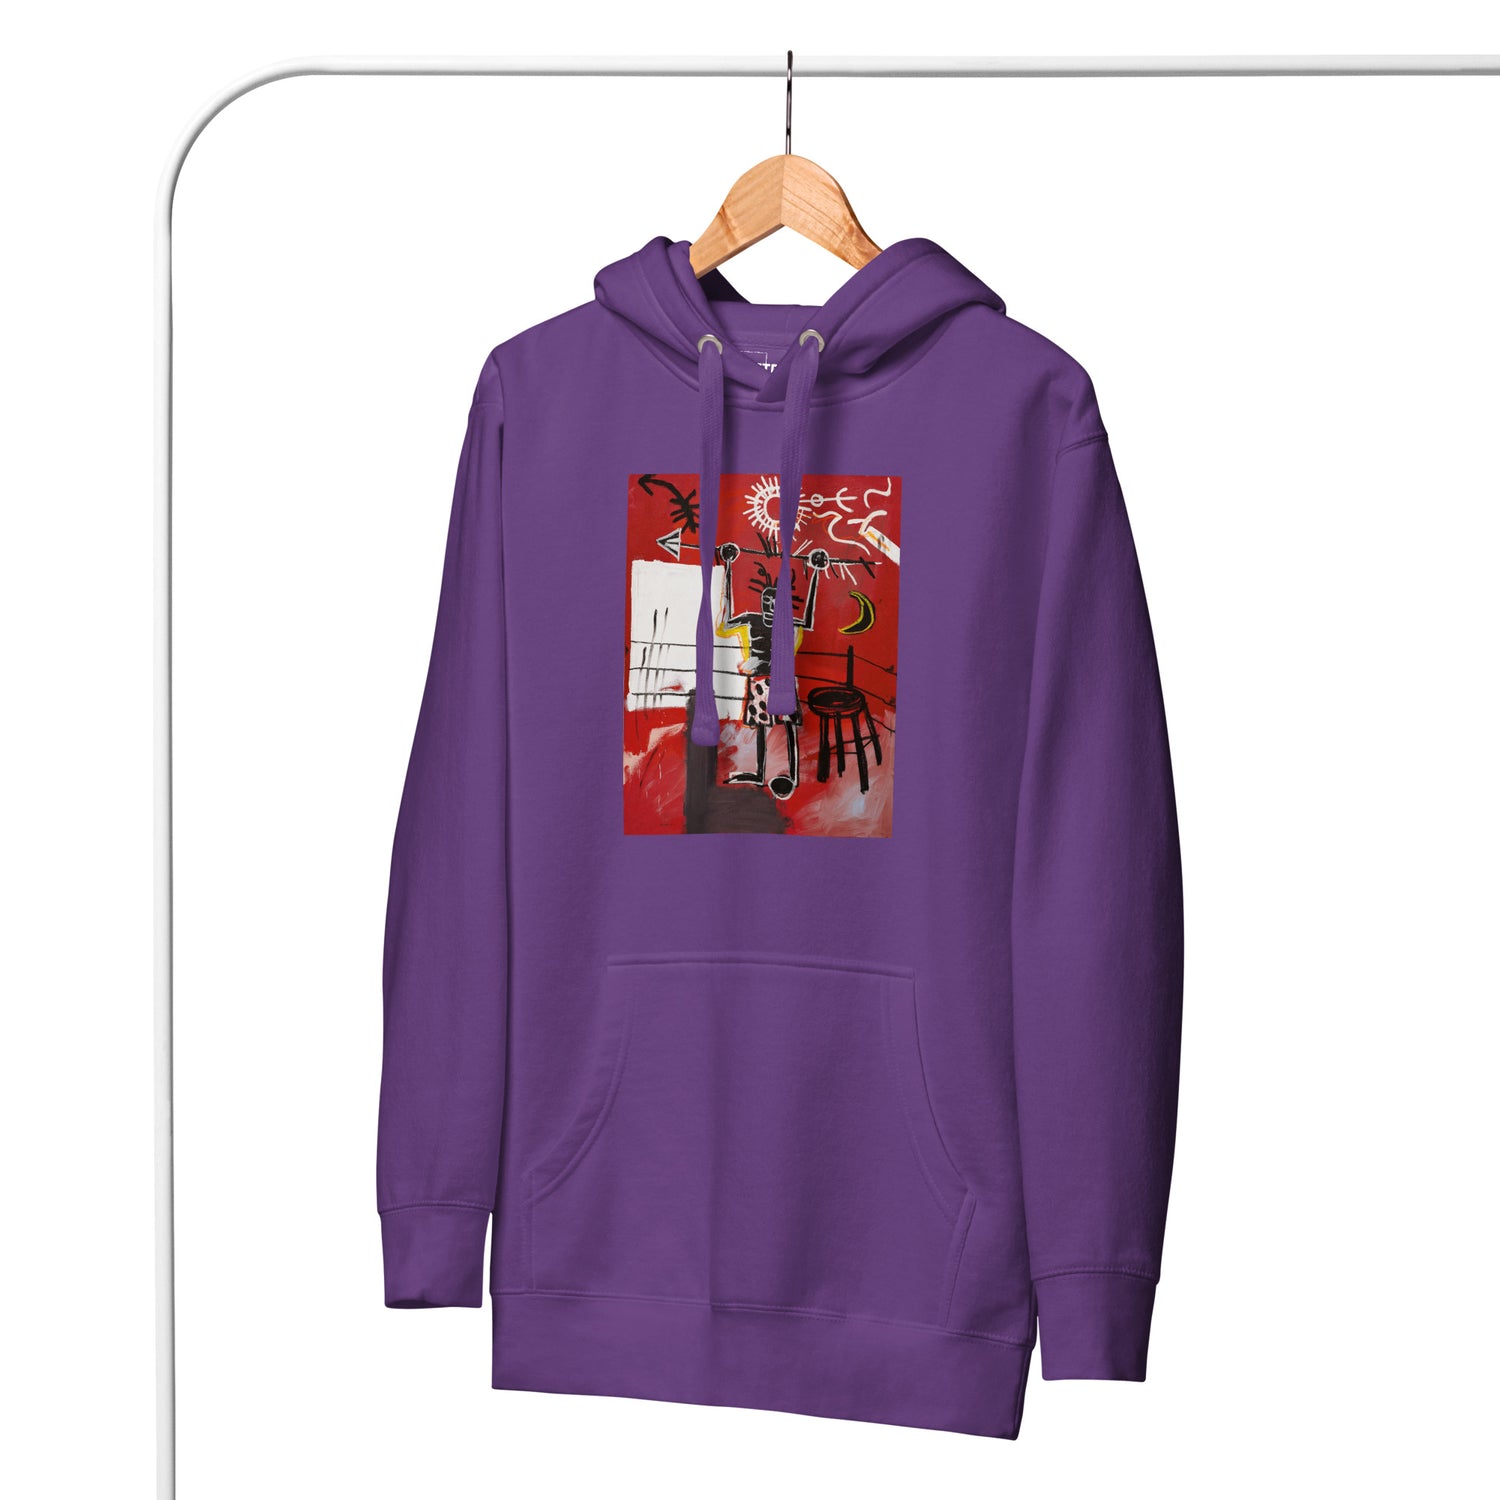 Jean-Michel Basquiat "The Ring" Artwork Printed Premium Streetwear Sweatshirt Hoodie Purple